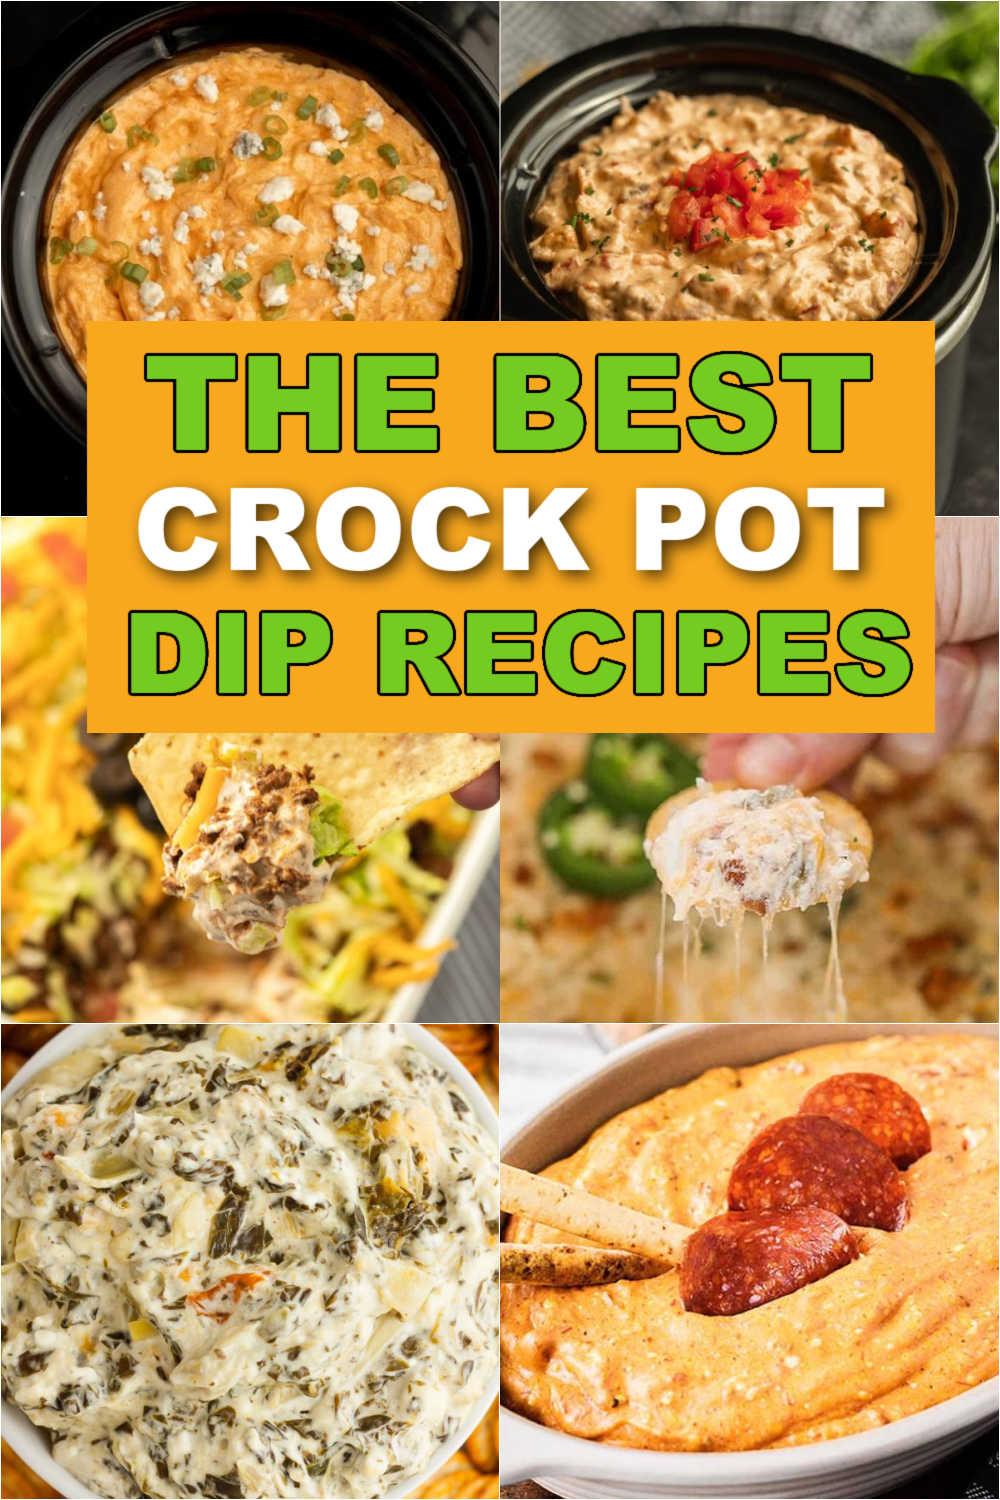 35+ Crock Pot Dips - All Things Mamma